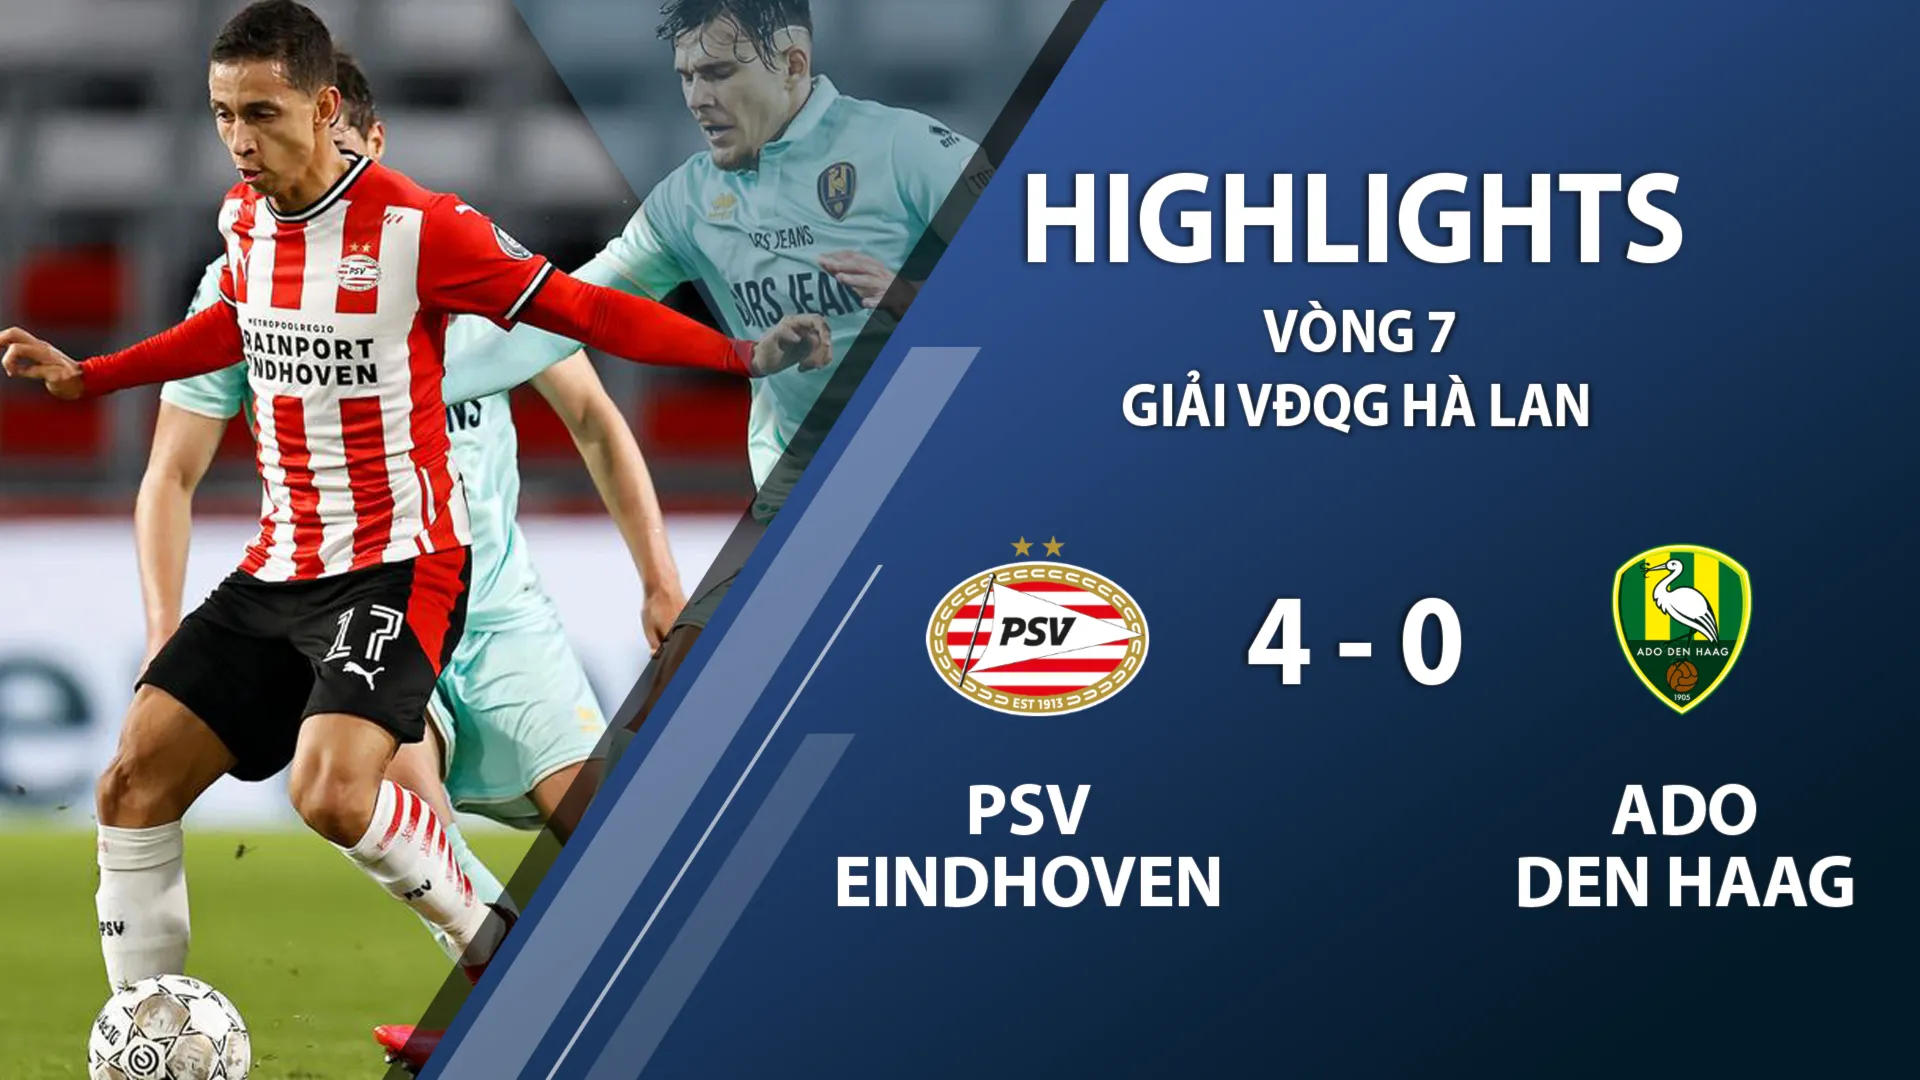 Highlights PSV Eindhoven 4-0 ADO Den Haag (vòng 7 giải VĐQG Hà Lan 2020/21)	